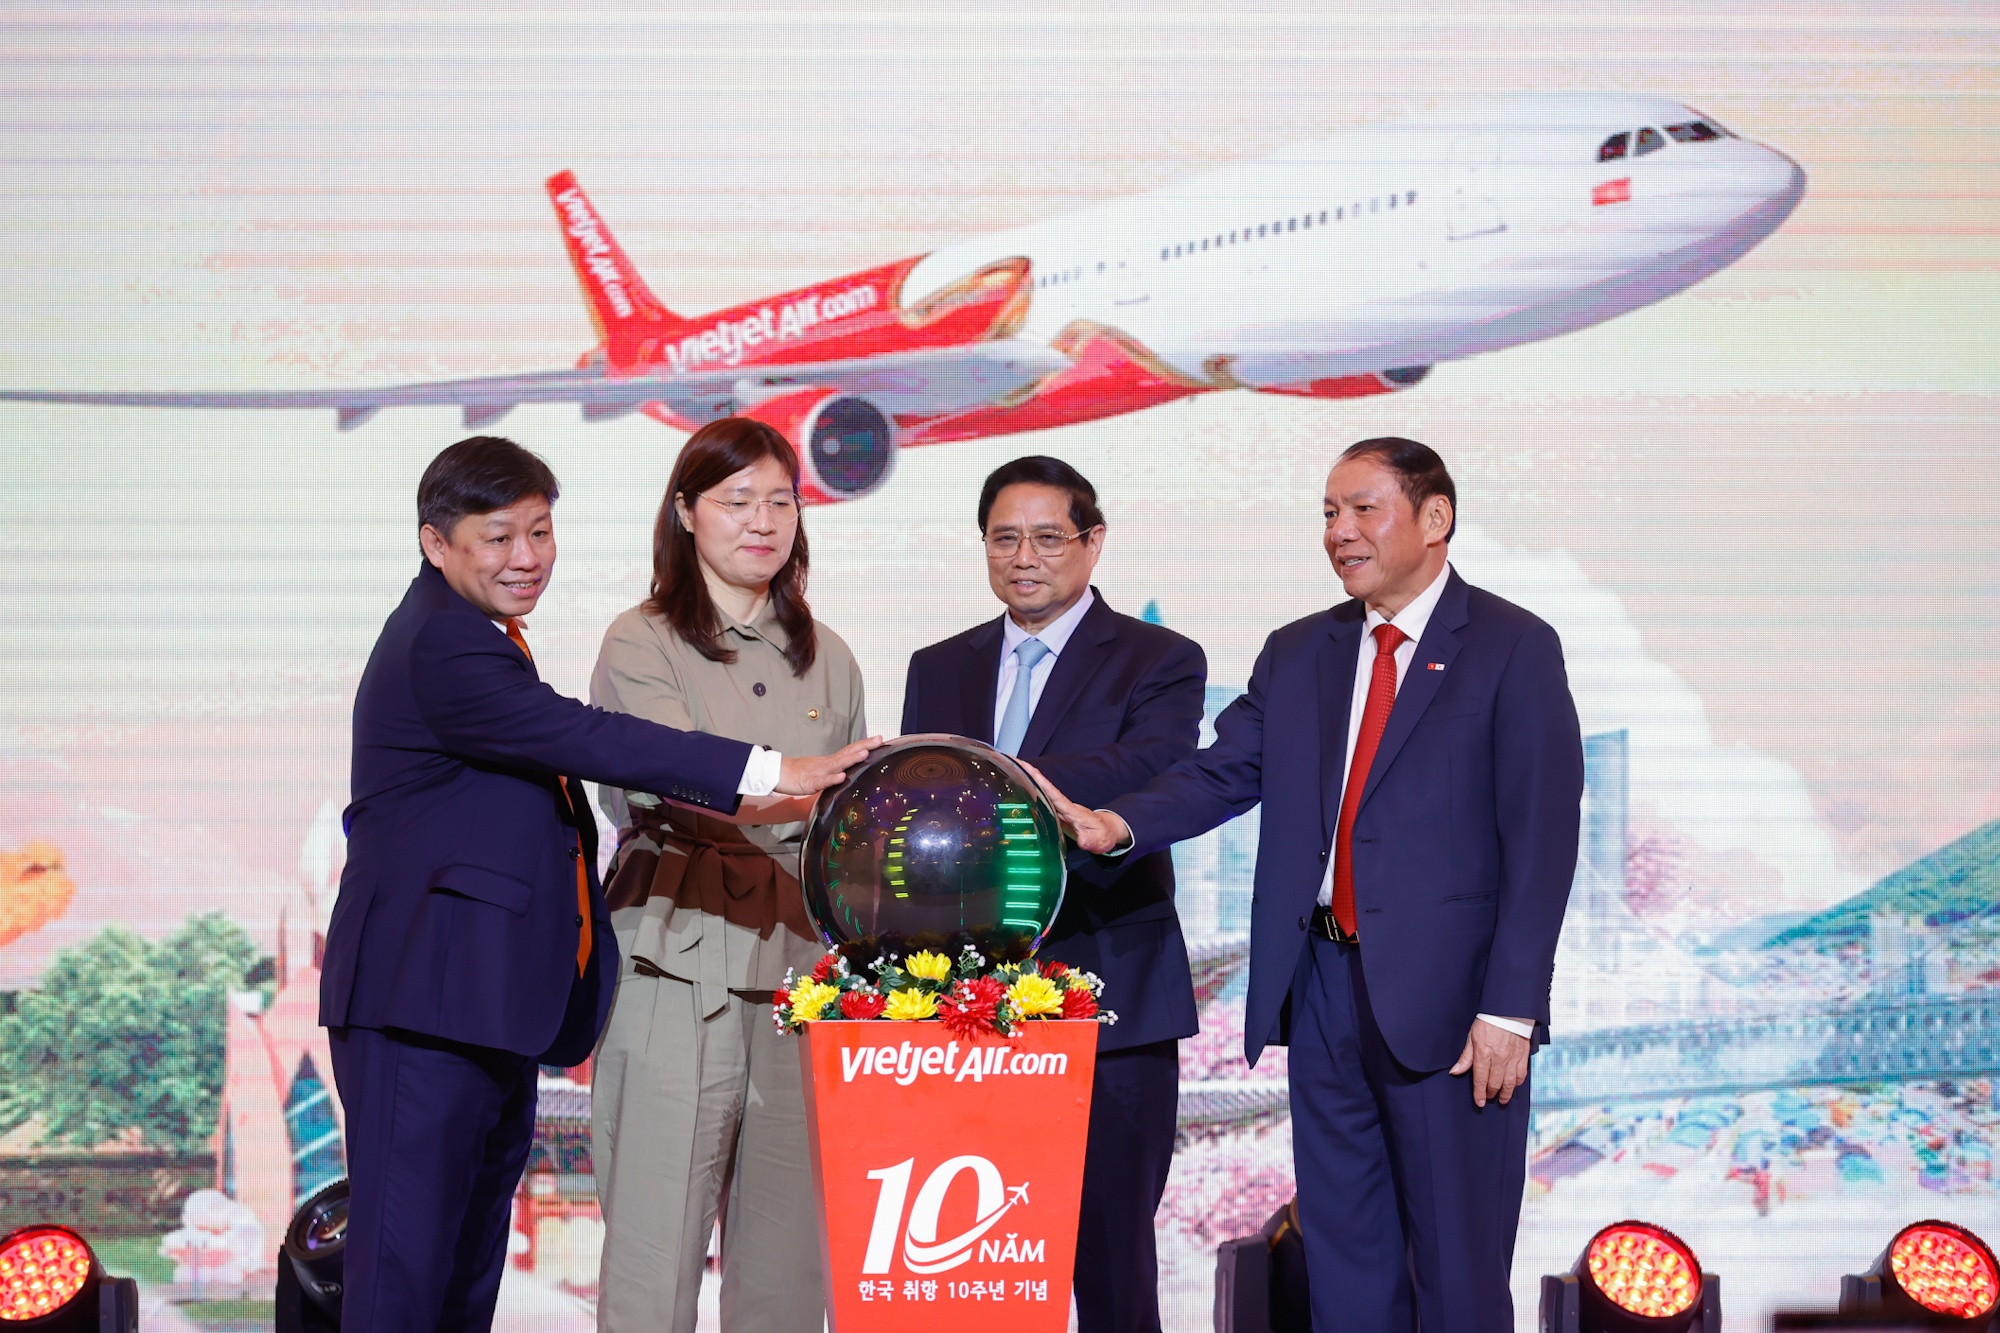 10 năm kết nối Việt Nam - Hàn Quốc, Vietjet công bố đường bay mới Daegu - Nha Trang